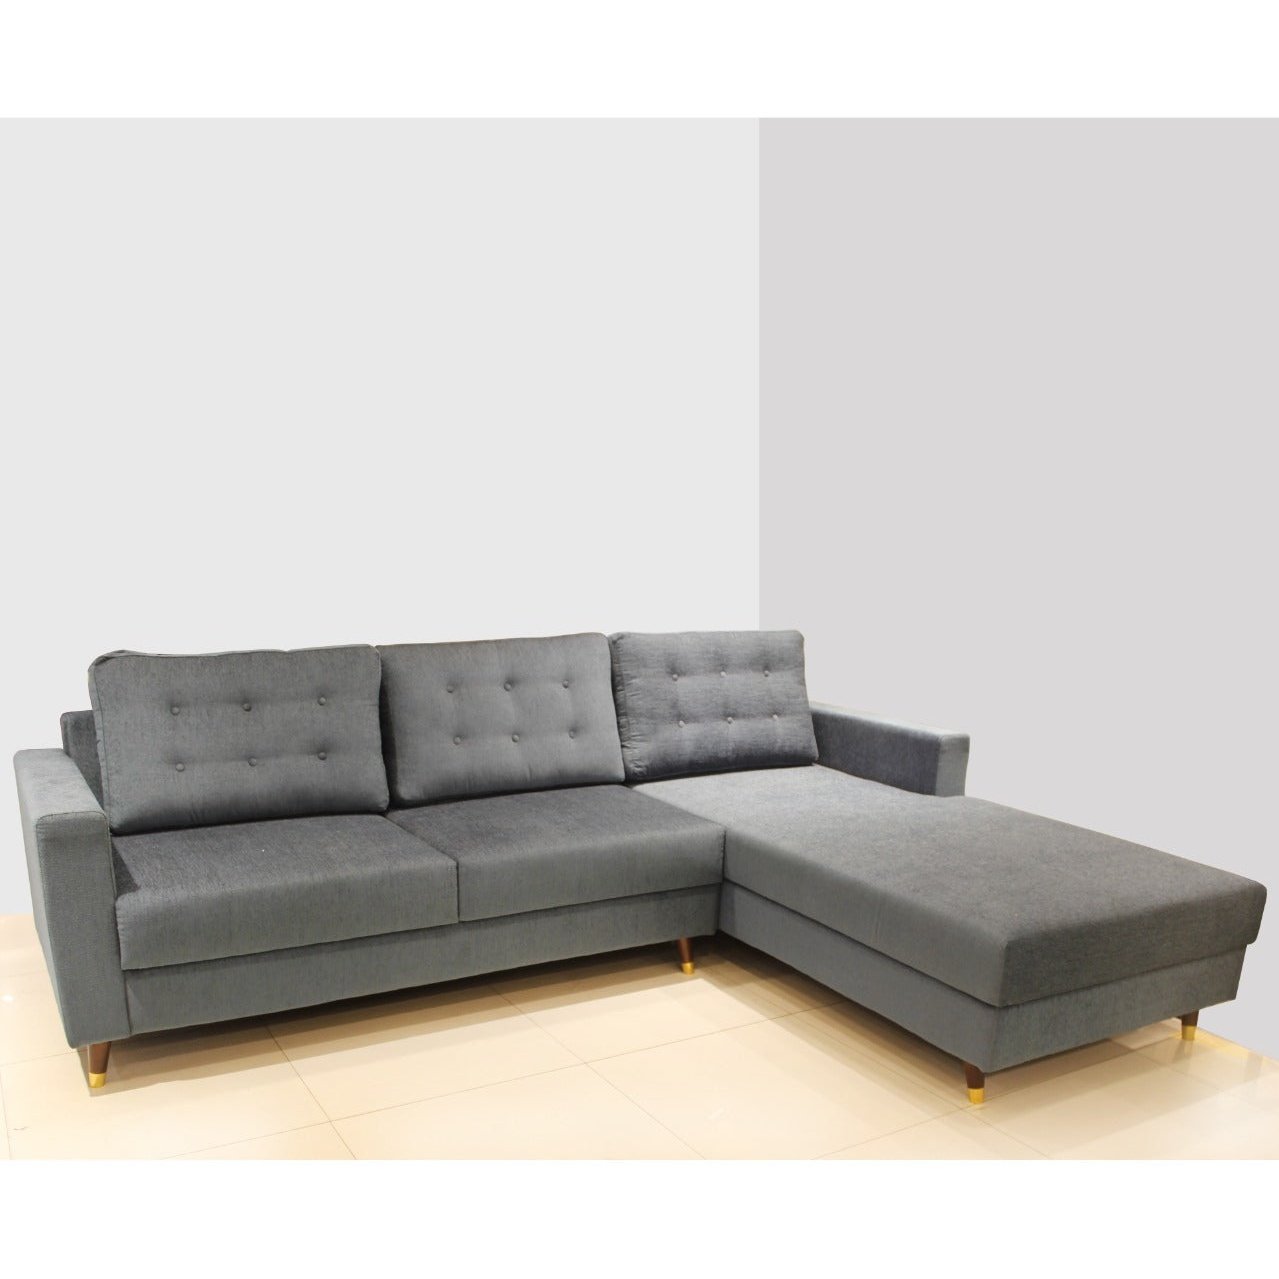 VR-180 BOSTON L SHAPE SOFA SET Mobel Furniture